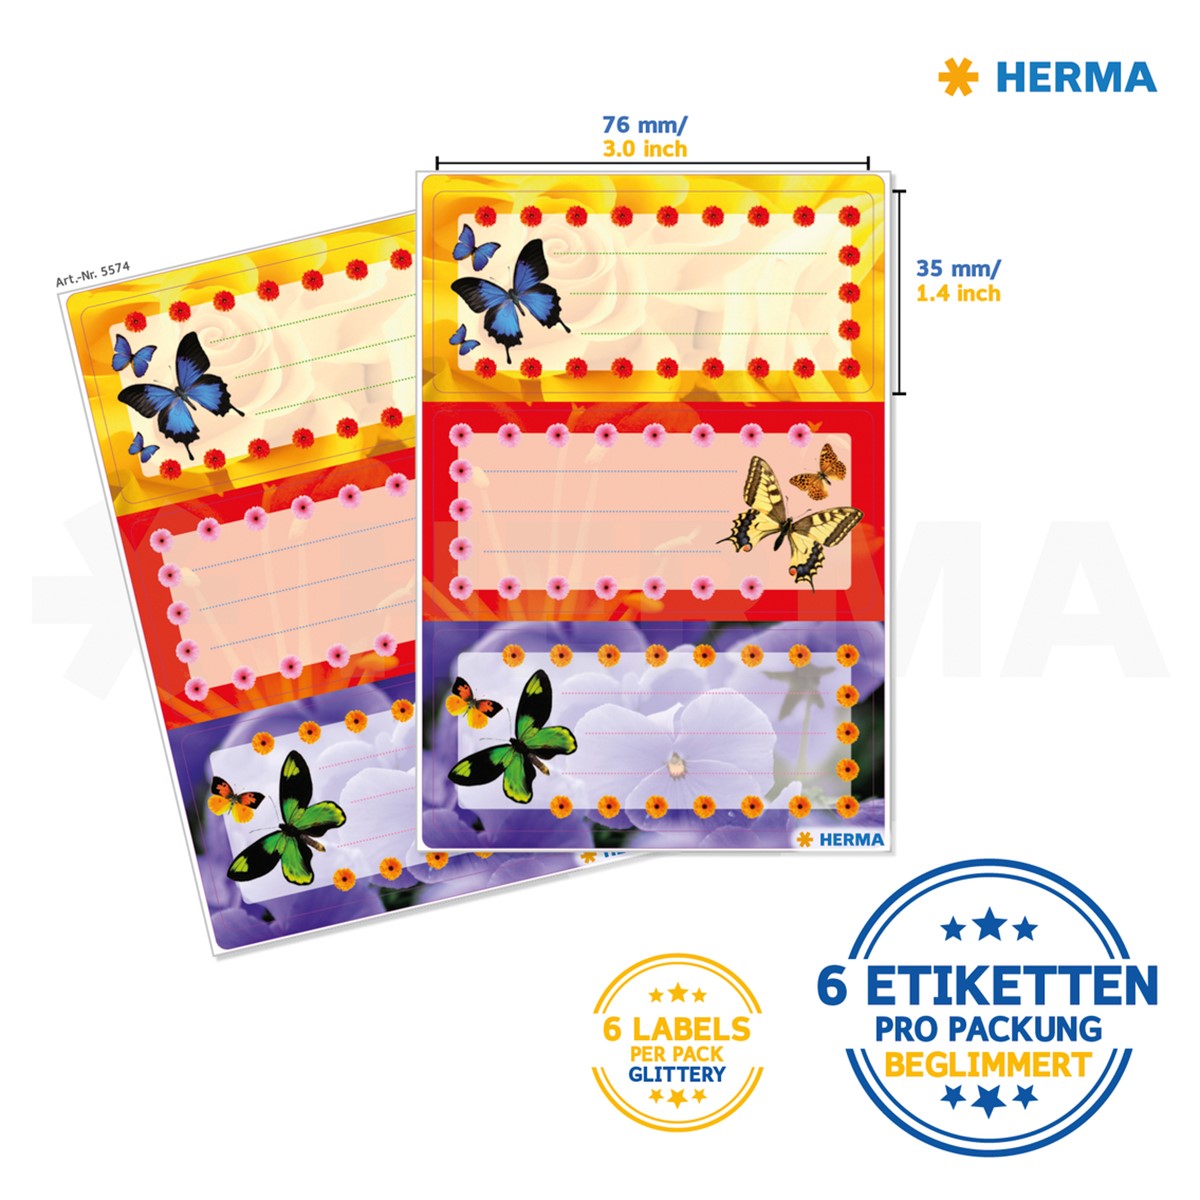 Herma - Heftetiketten 76 mm x 35 mm - selbstklebend - 6 Sticker